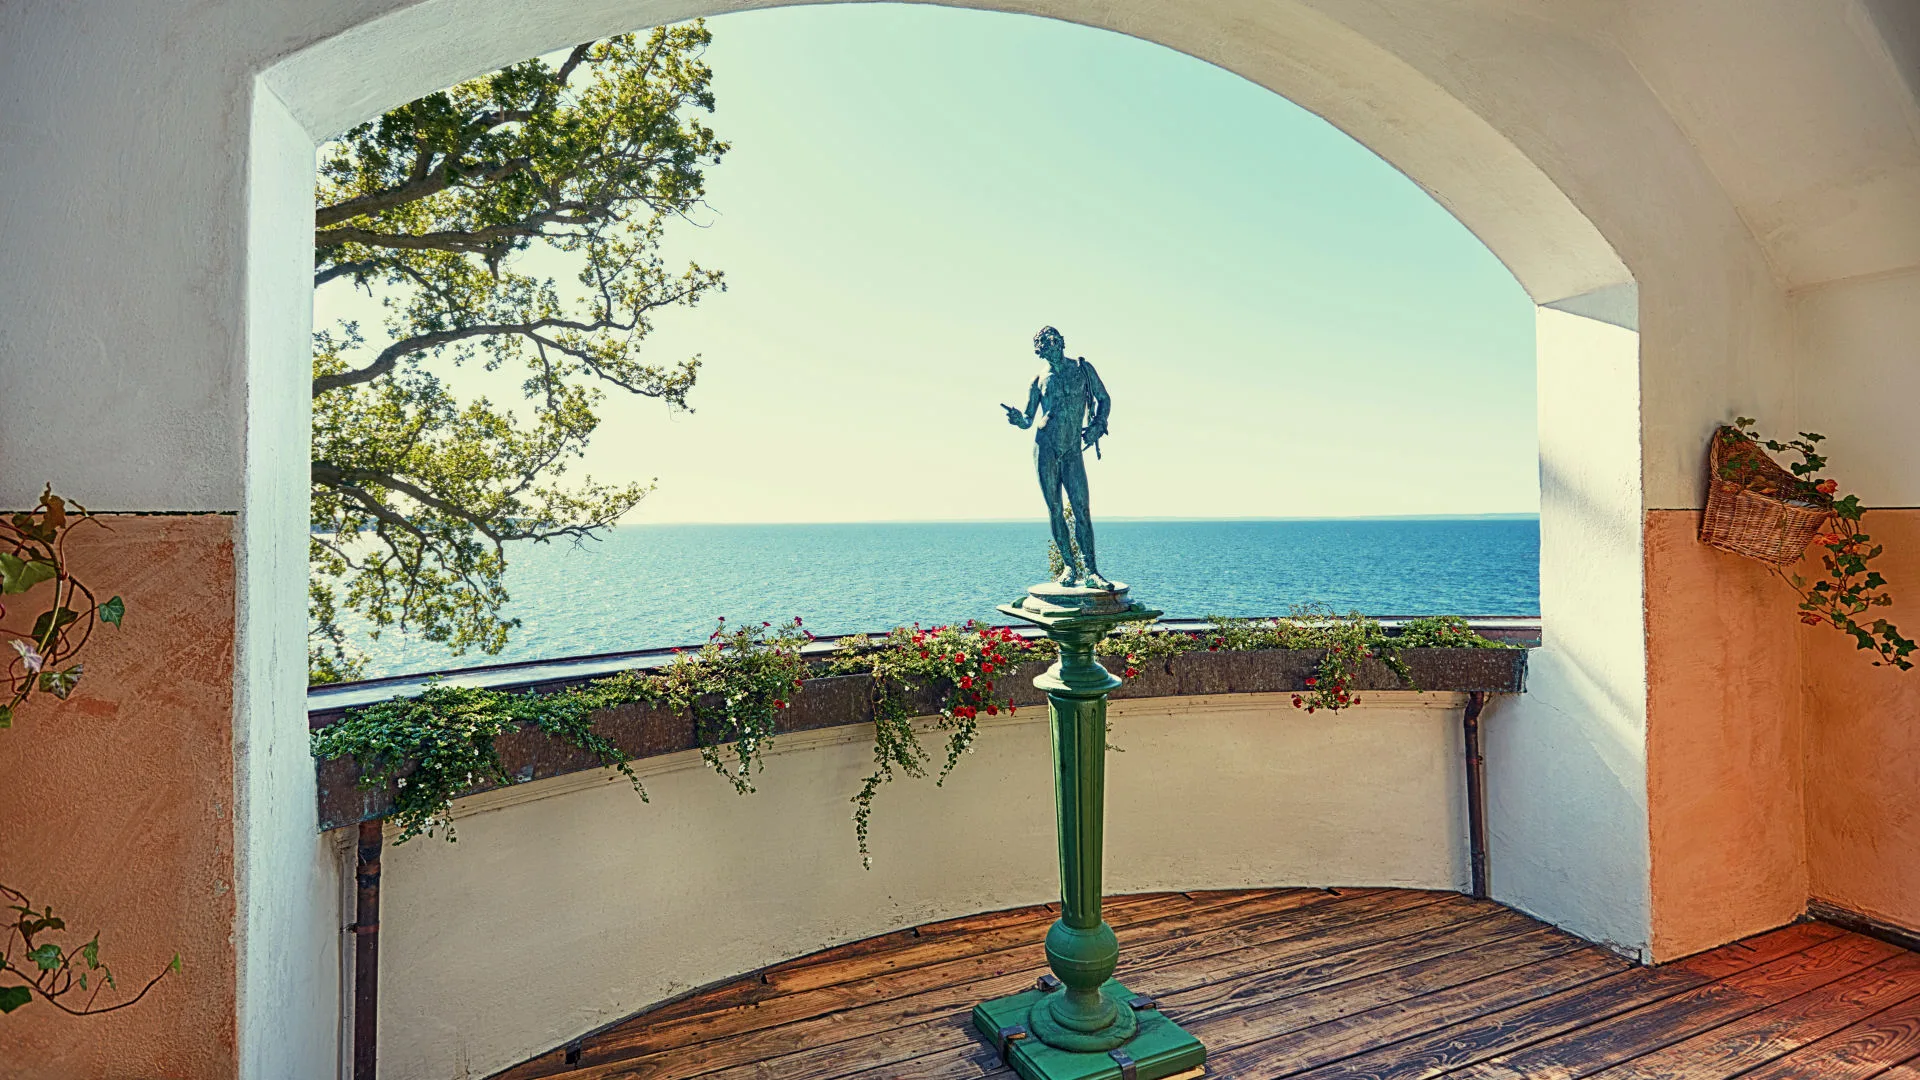 En staty som står på en balkong som vetter ut mot havet och en klarblå himel.